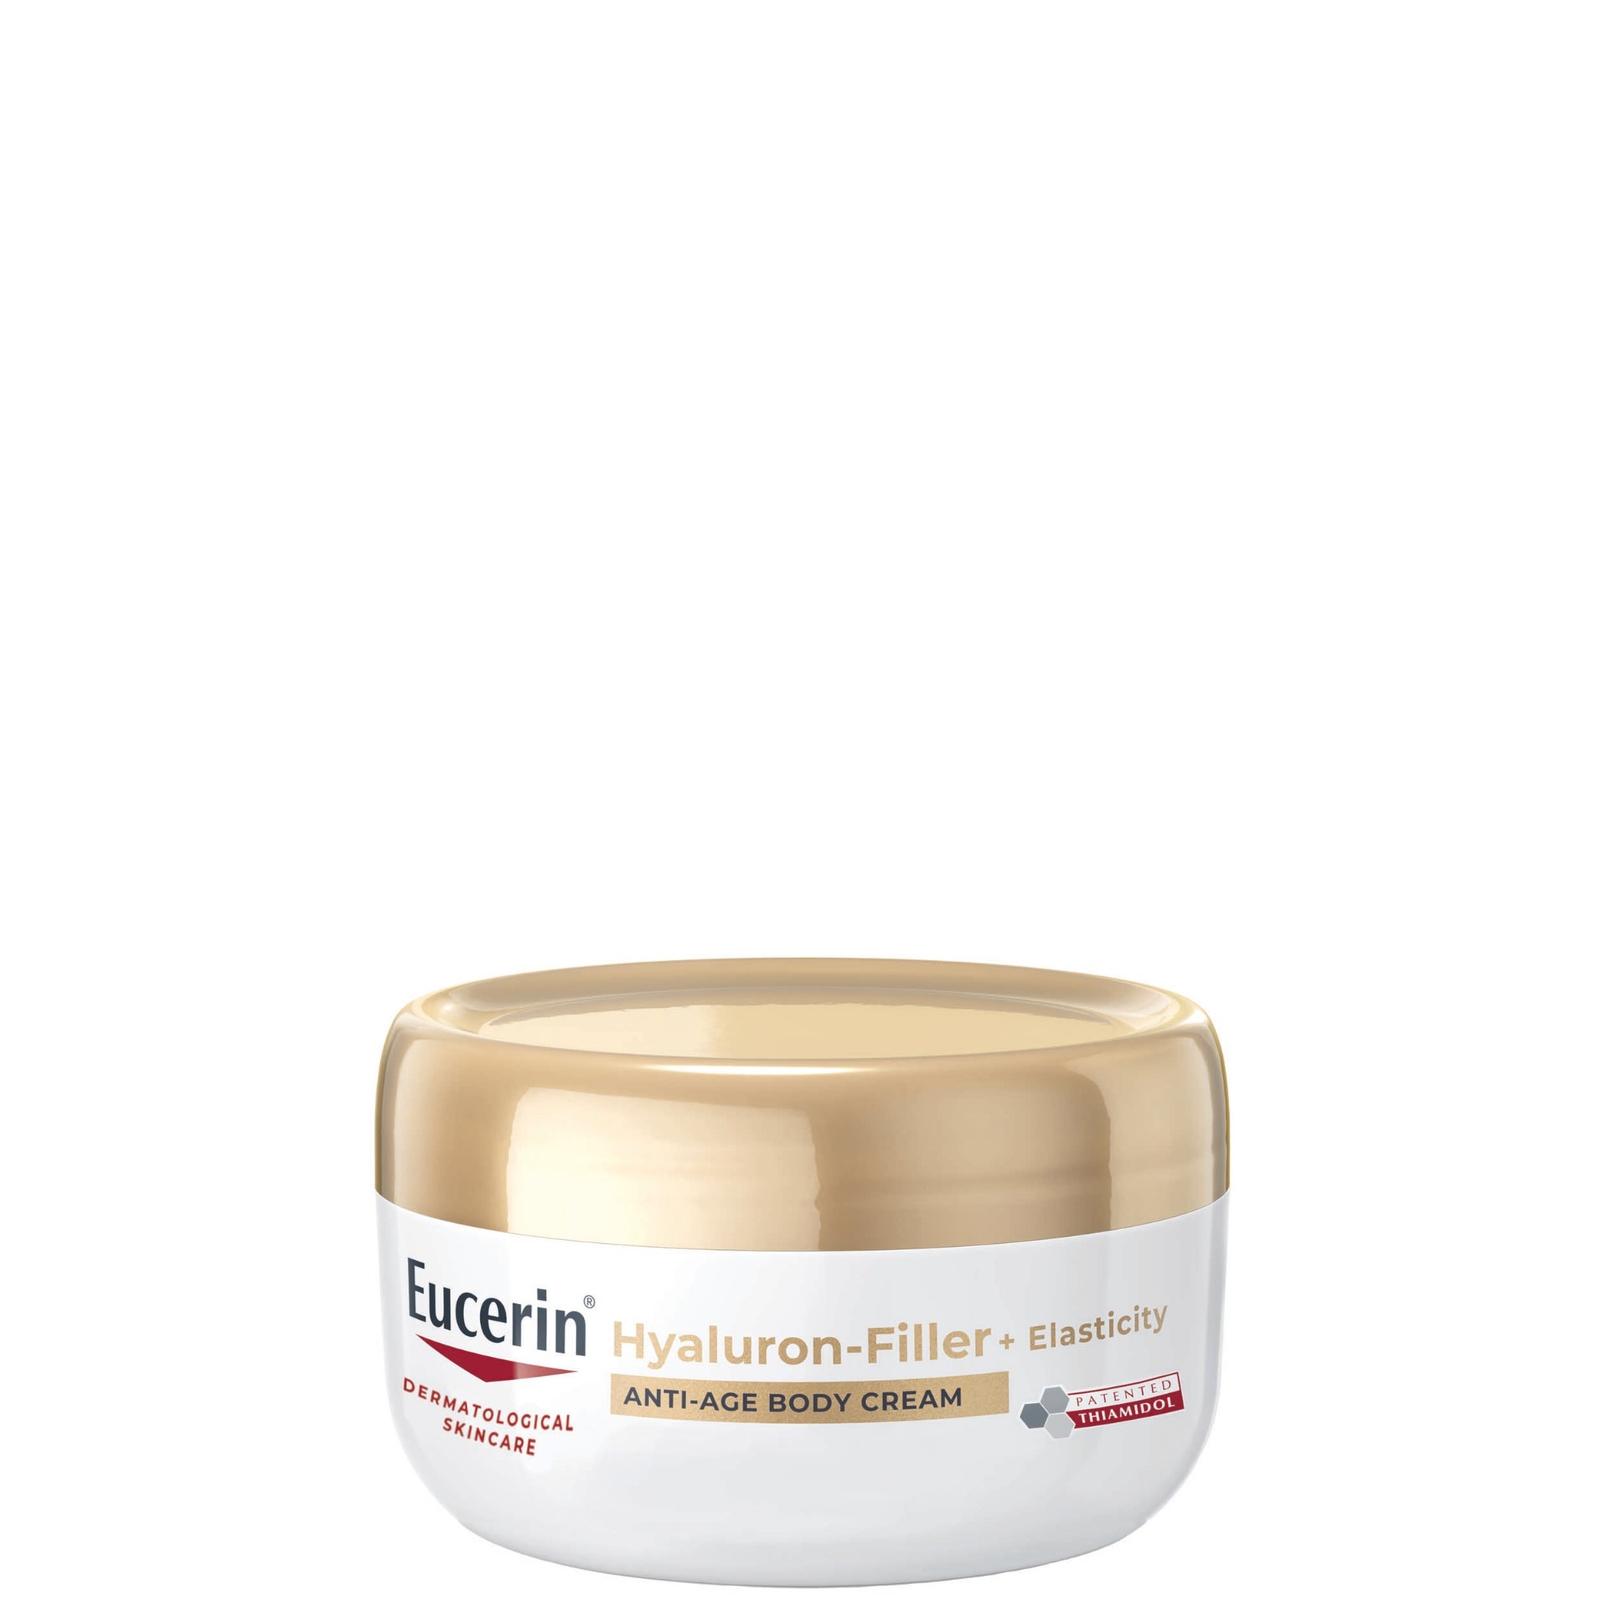 Eucerin Hyaluron-filler + Elasticity Body Cream 200ml In White